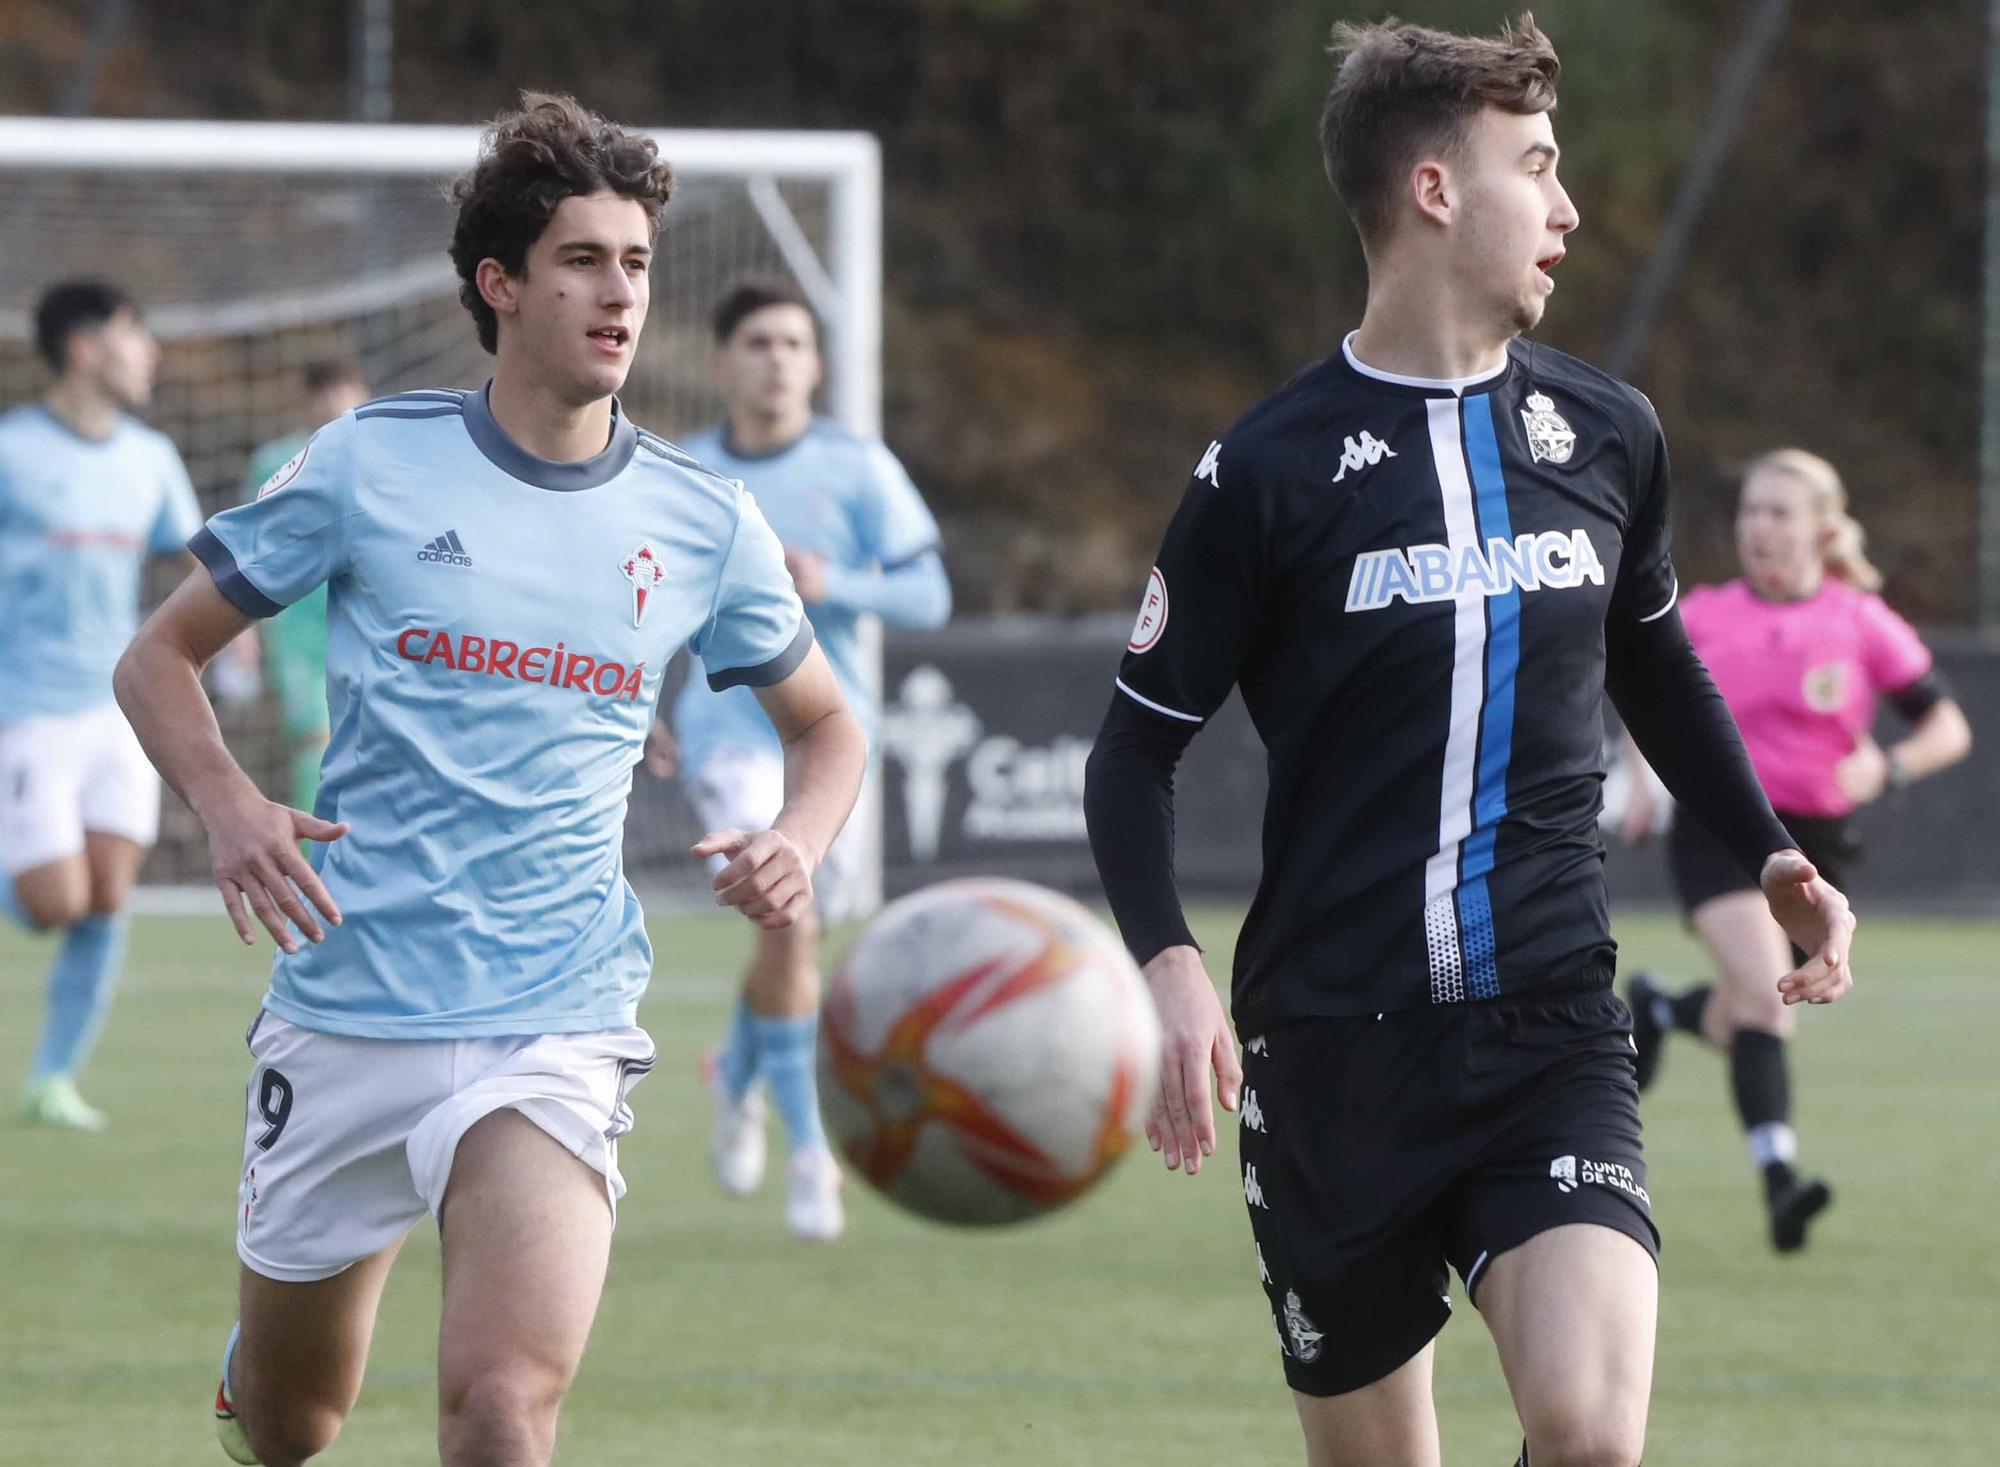 Derbi de juveniles de Copa del Rey entre Celta y Deportivo en Vigo